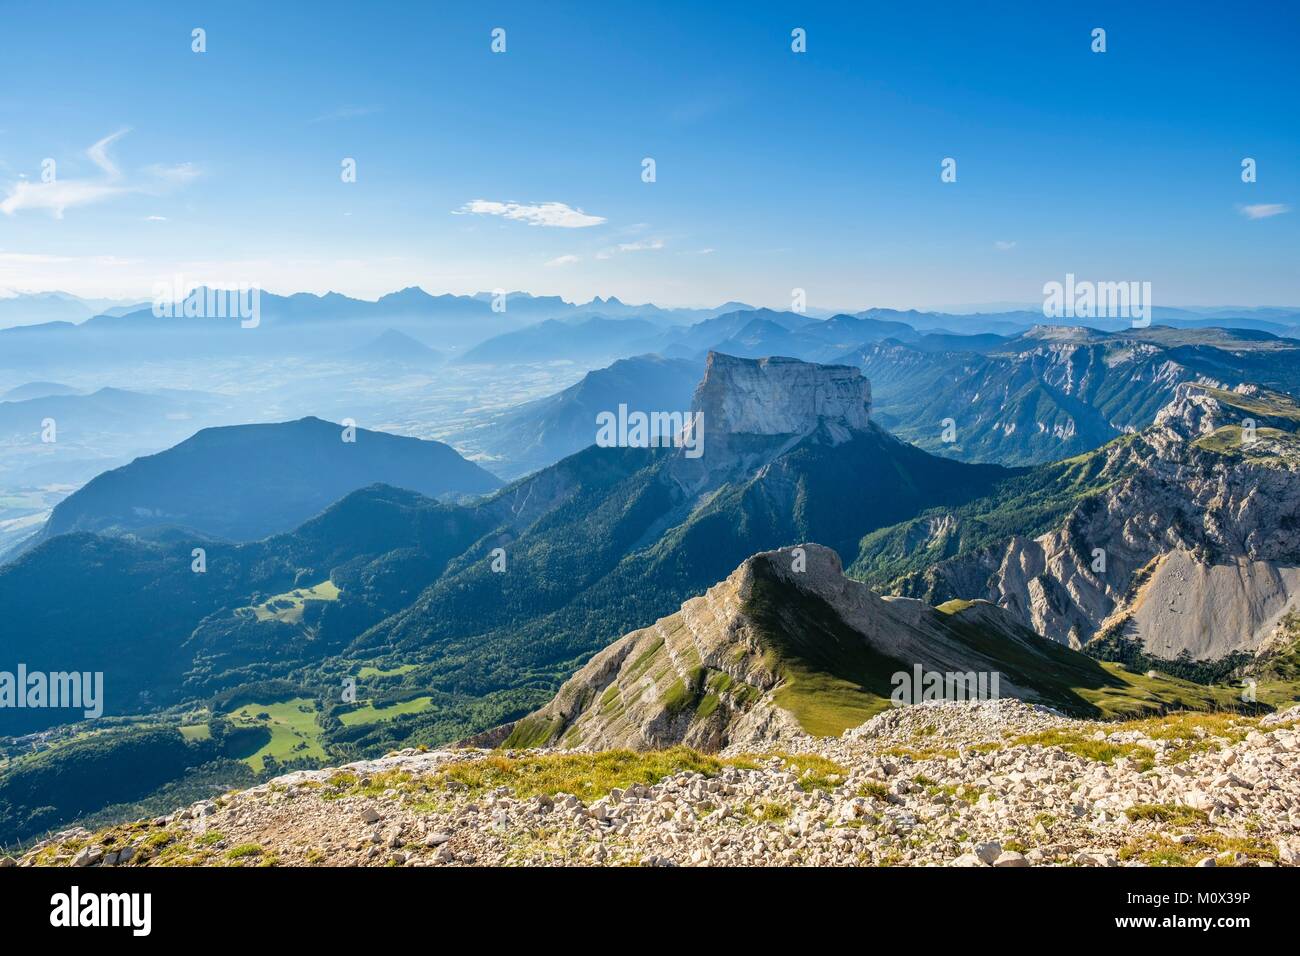 France,Isère,Parc Naturel Régional du Vercors, la réserve naturelle nationale des hauts plateaux du Vercors,panorama depuis le sommet du Grand Veymont (alt : 2341 m), point le plus élevé du massif du Vercors,vue sur le Mont Aiguille (alt : 2087 m) et le massif du Dévoluy à l'arrière-plan Banque D'Images